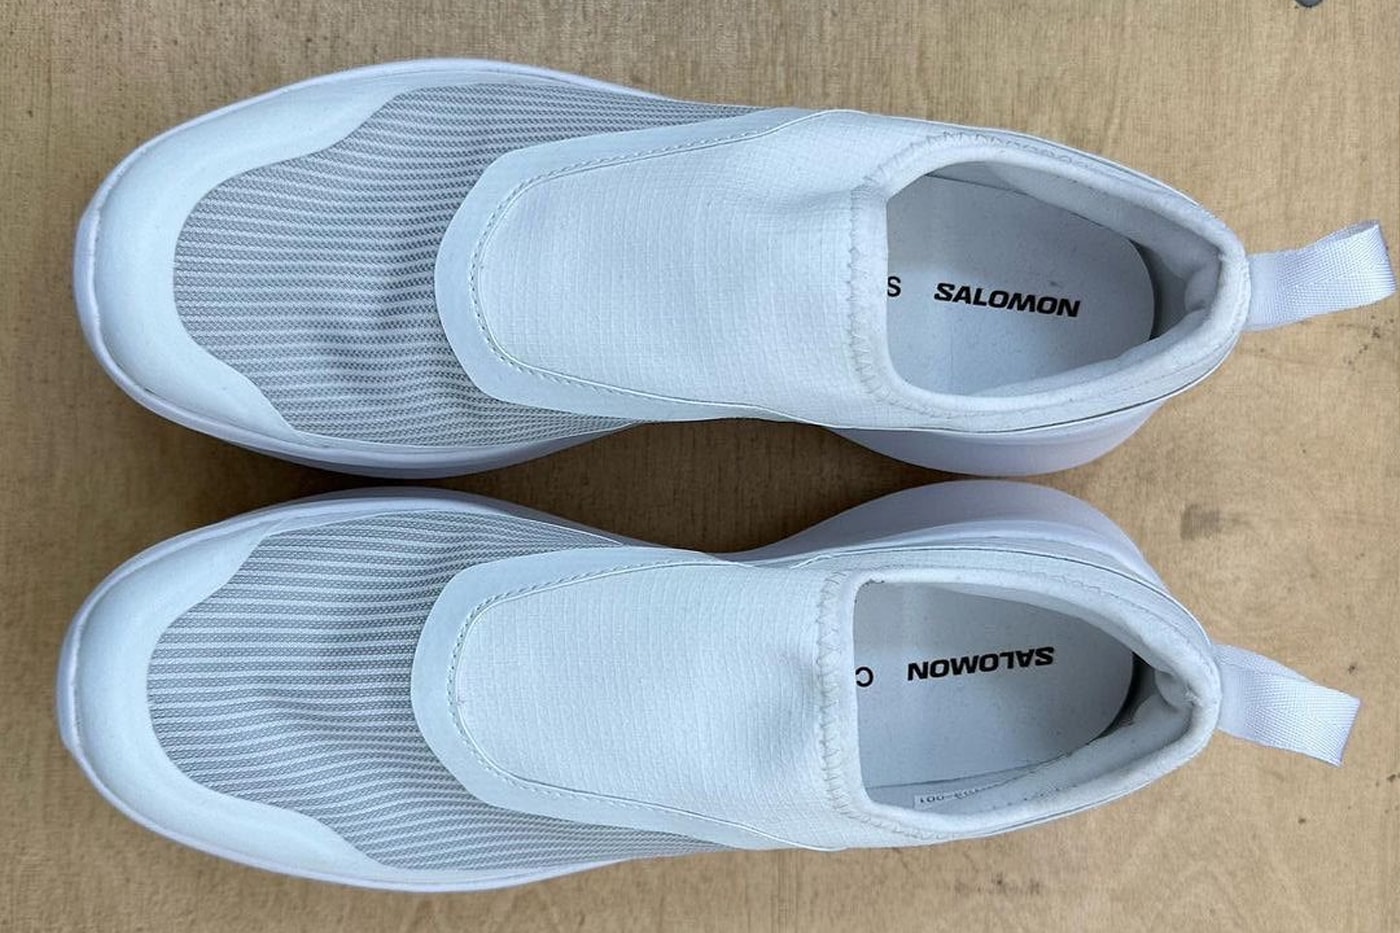 率先近賞 COMME des GARÇONS x Salomon 最新 2023 秋冬联名鞋款